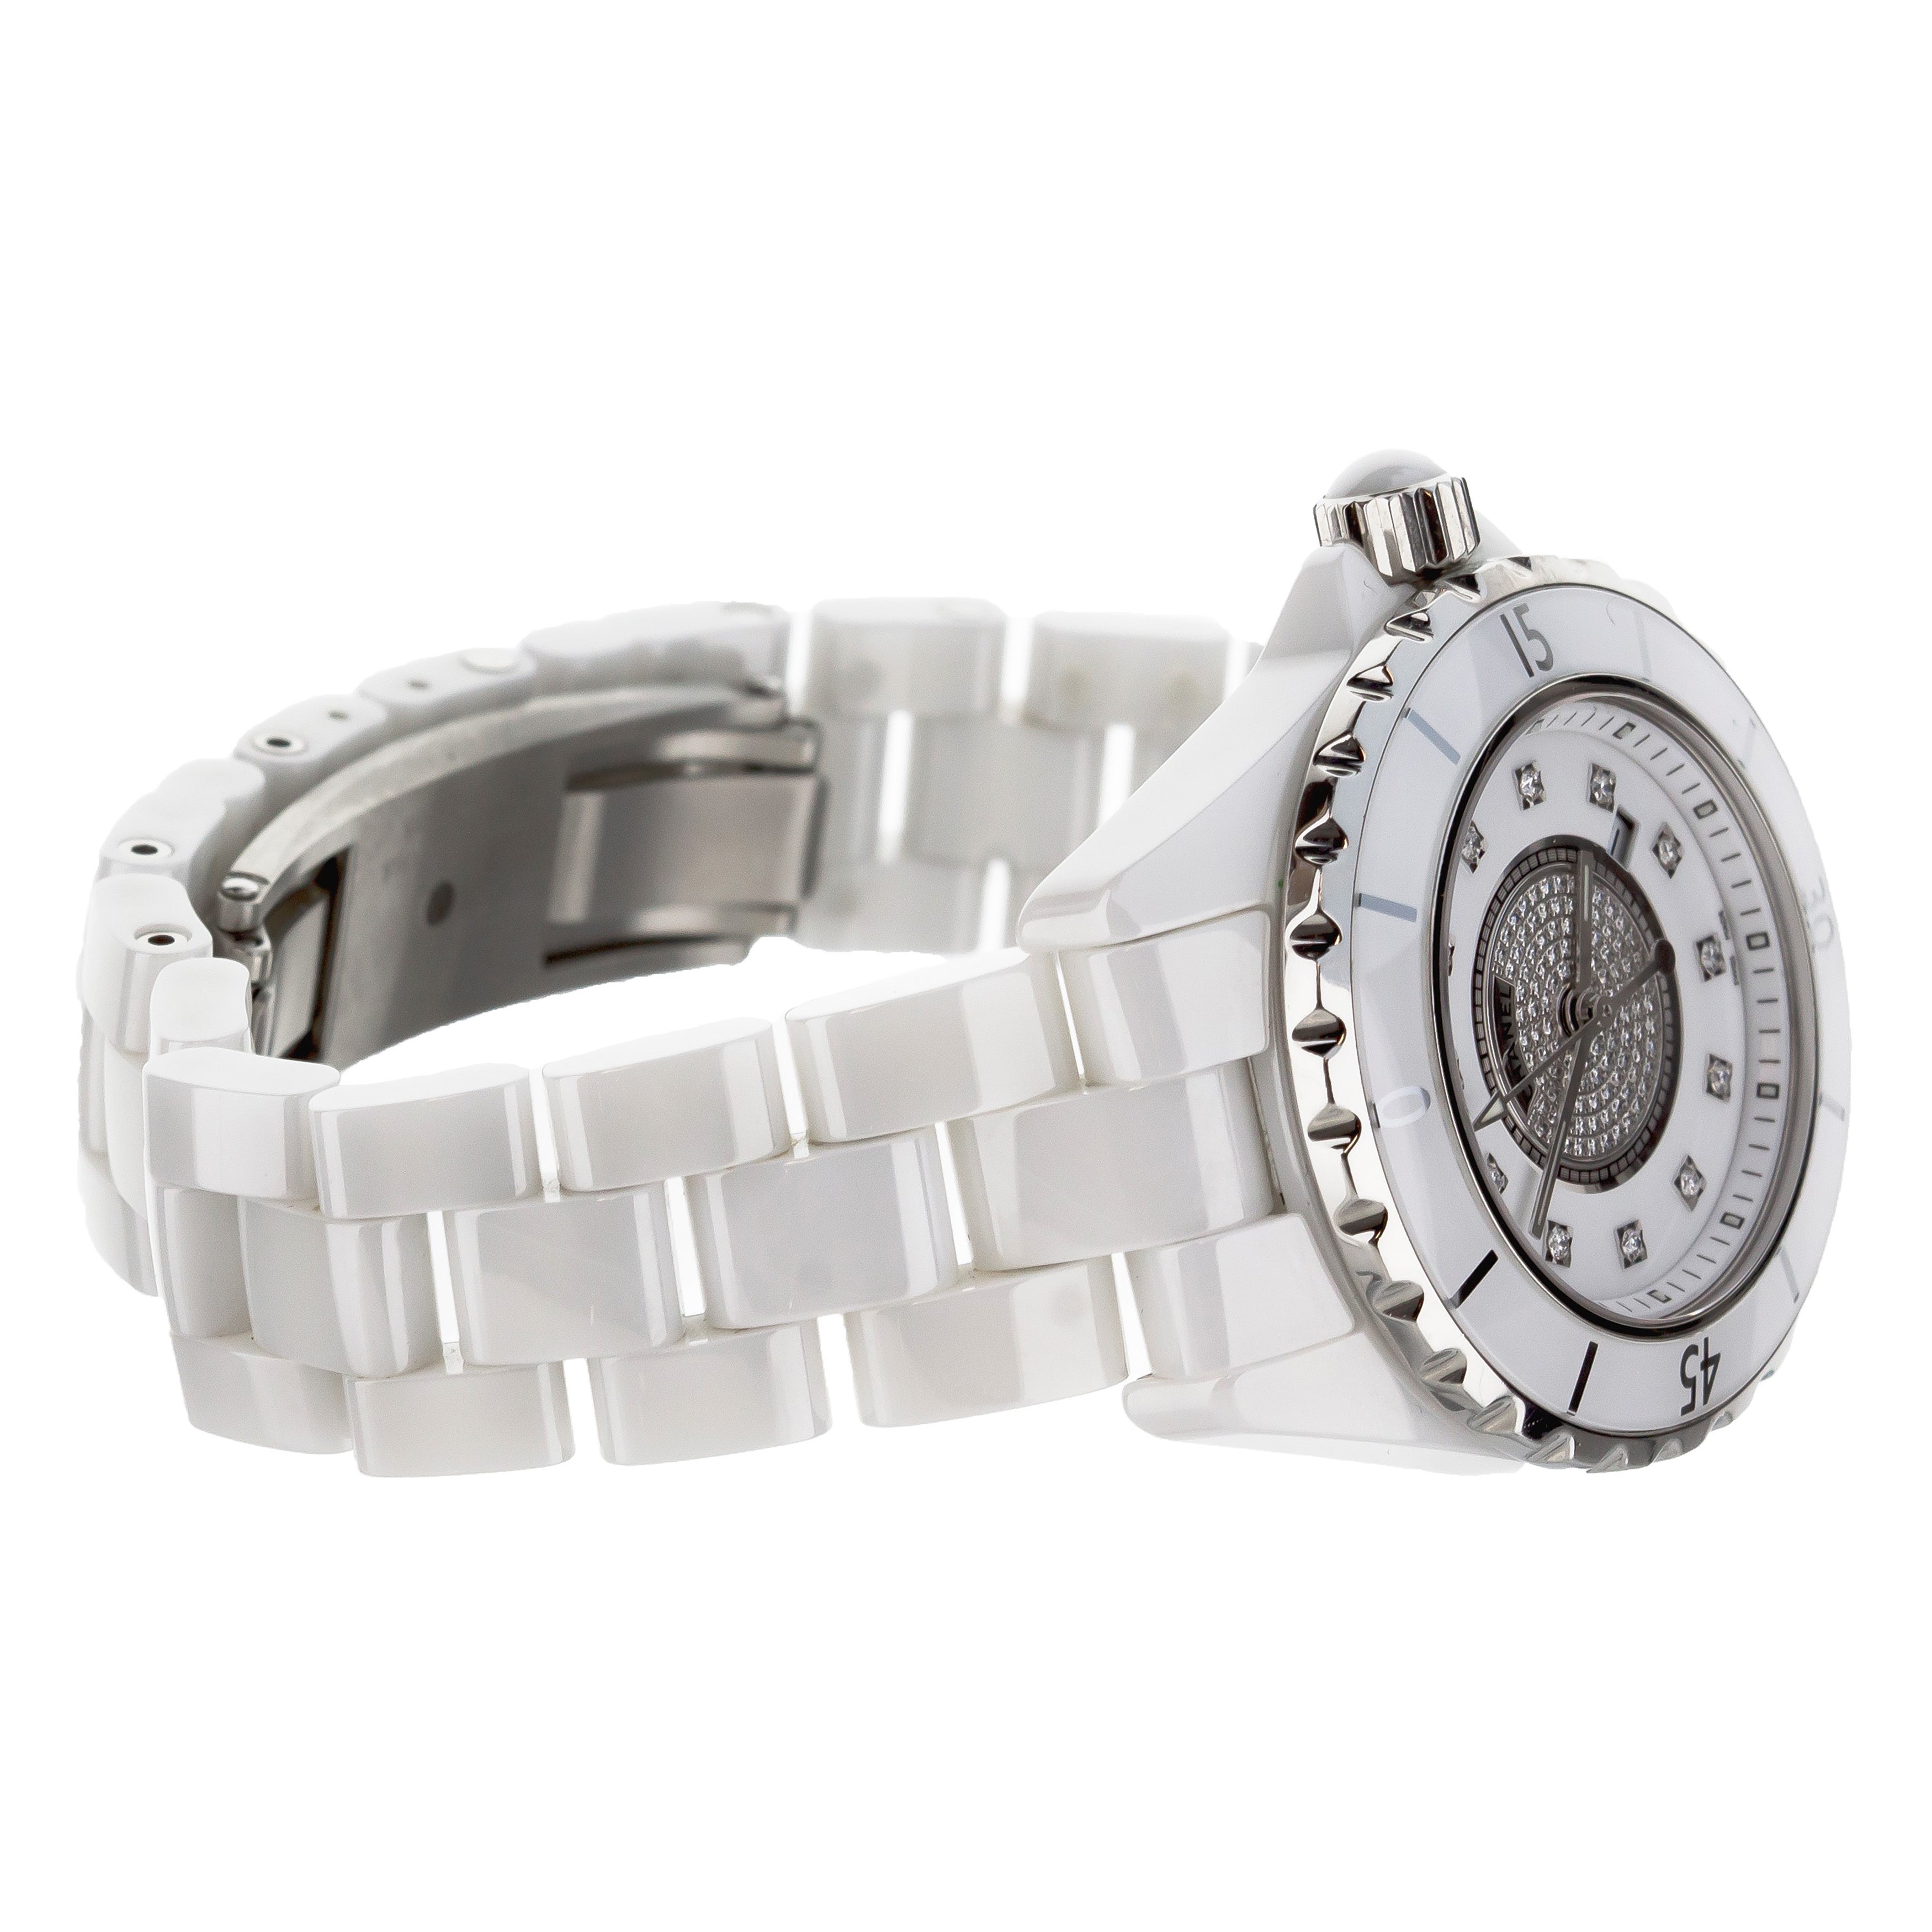 Chanel J12 White Dial Ehite Ceramic Case Bracelet 33mm Quartz H2123